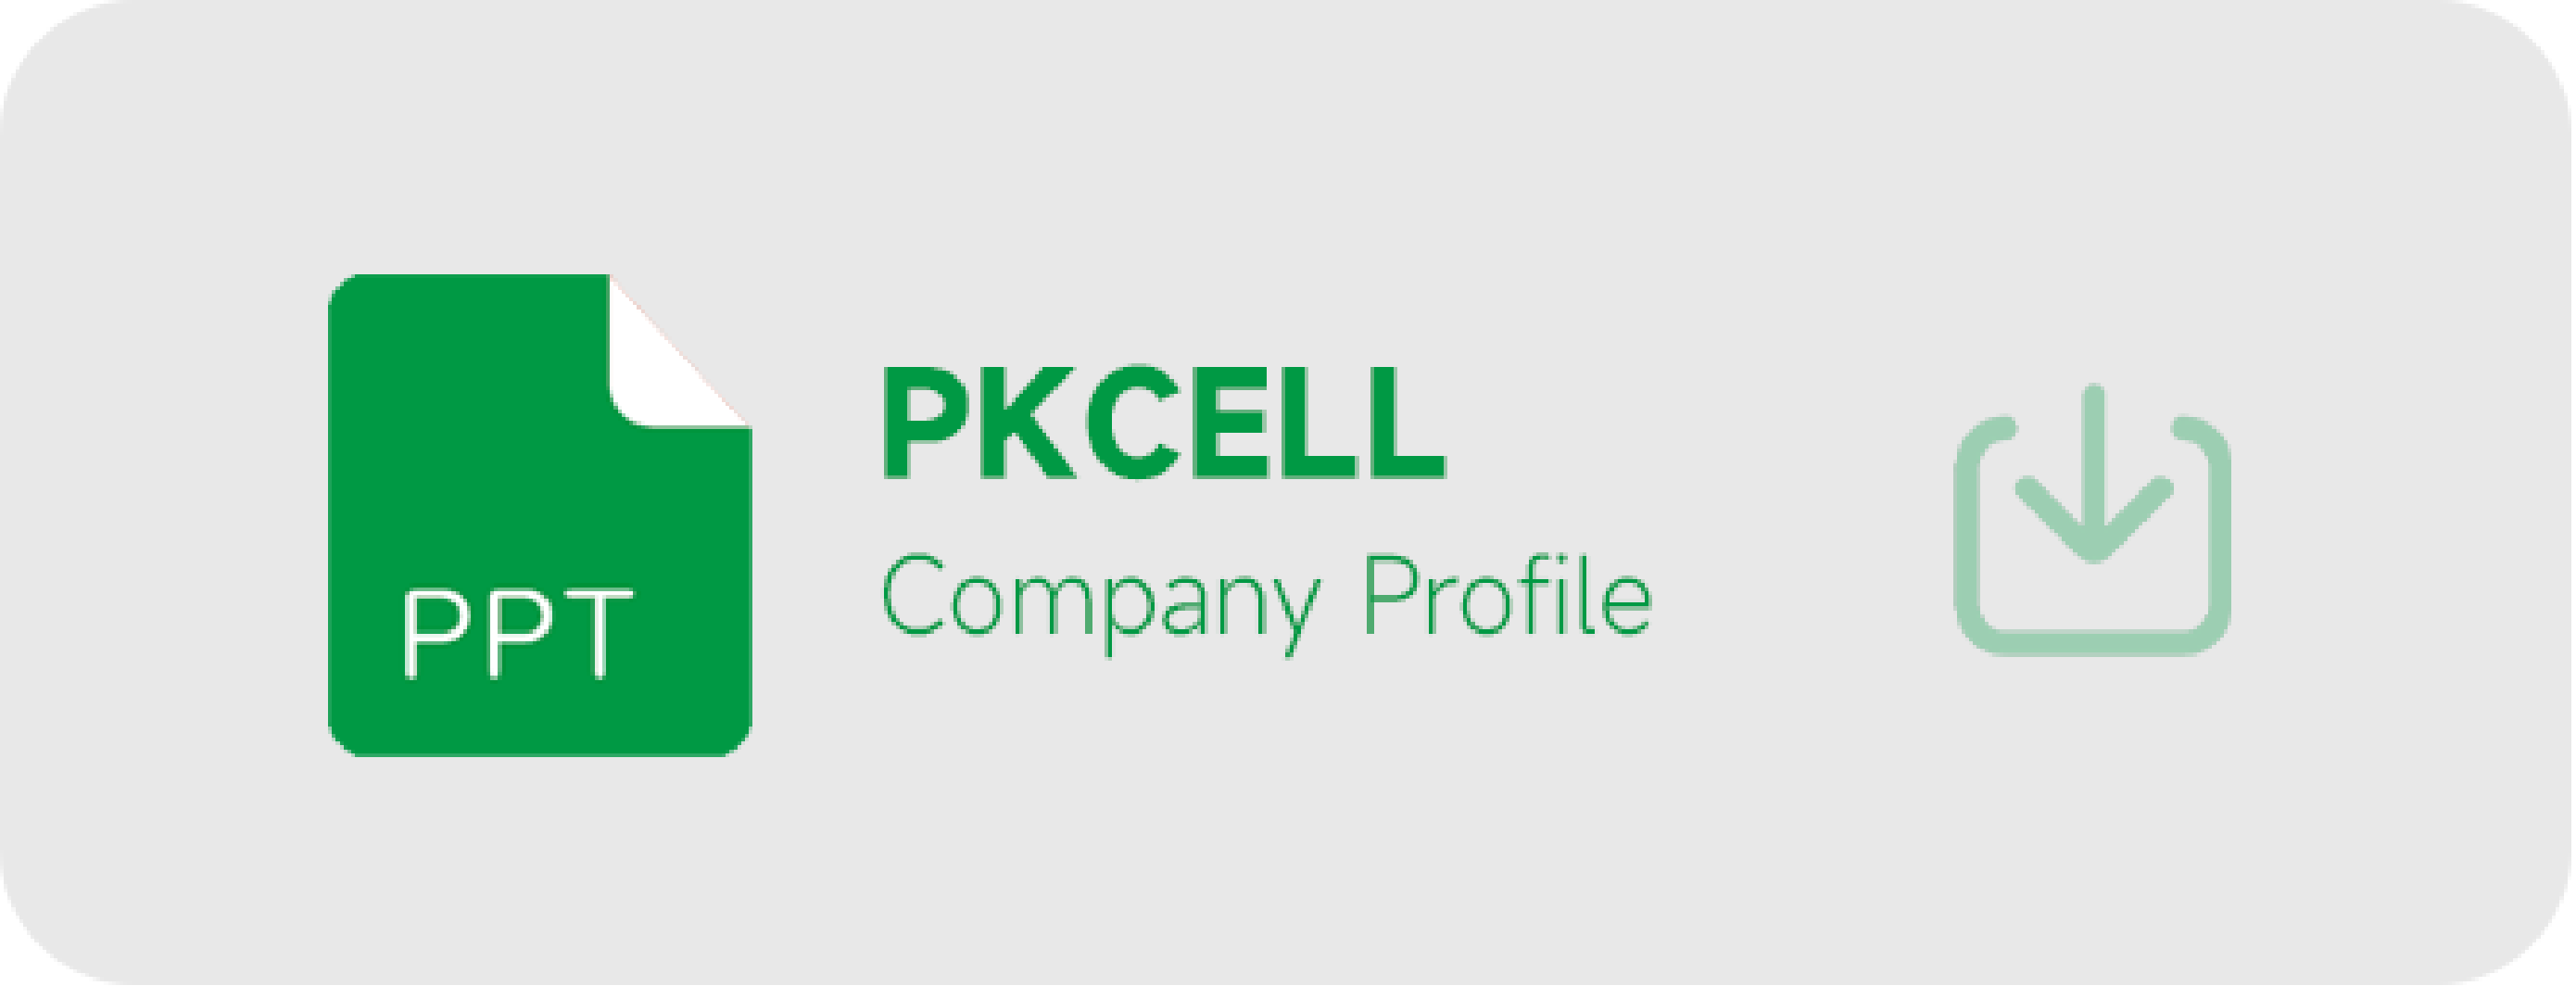 profil de la société pkcell